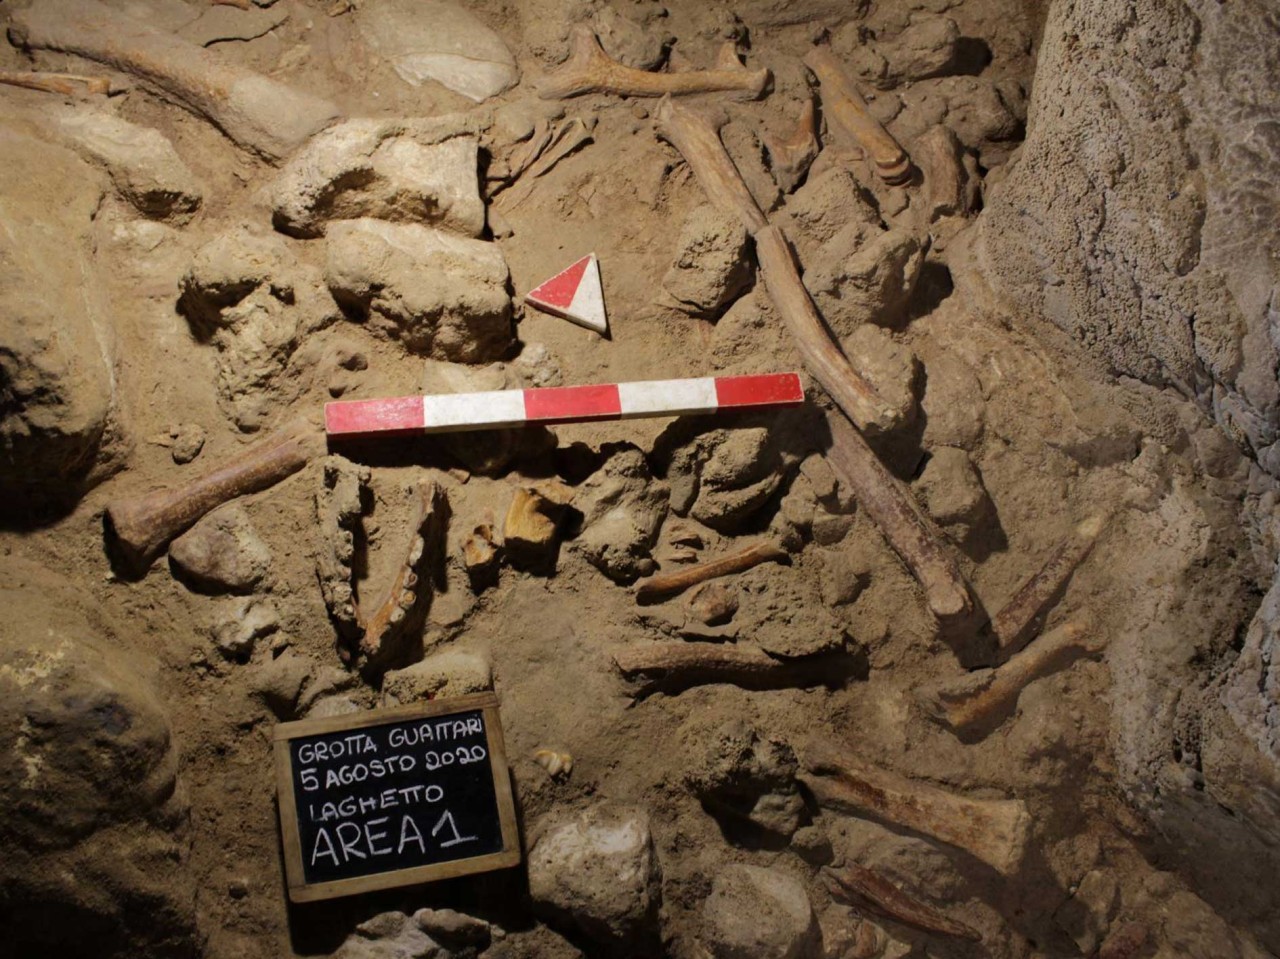 Wissenschaft: In der Höhle wurden Knochen von mehreren Neandertalern gefunden.